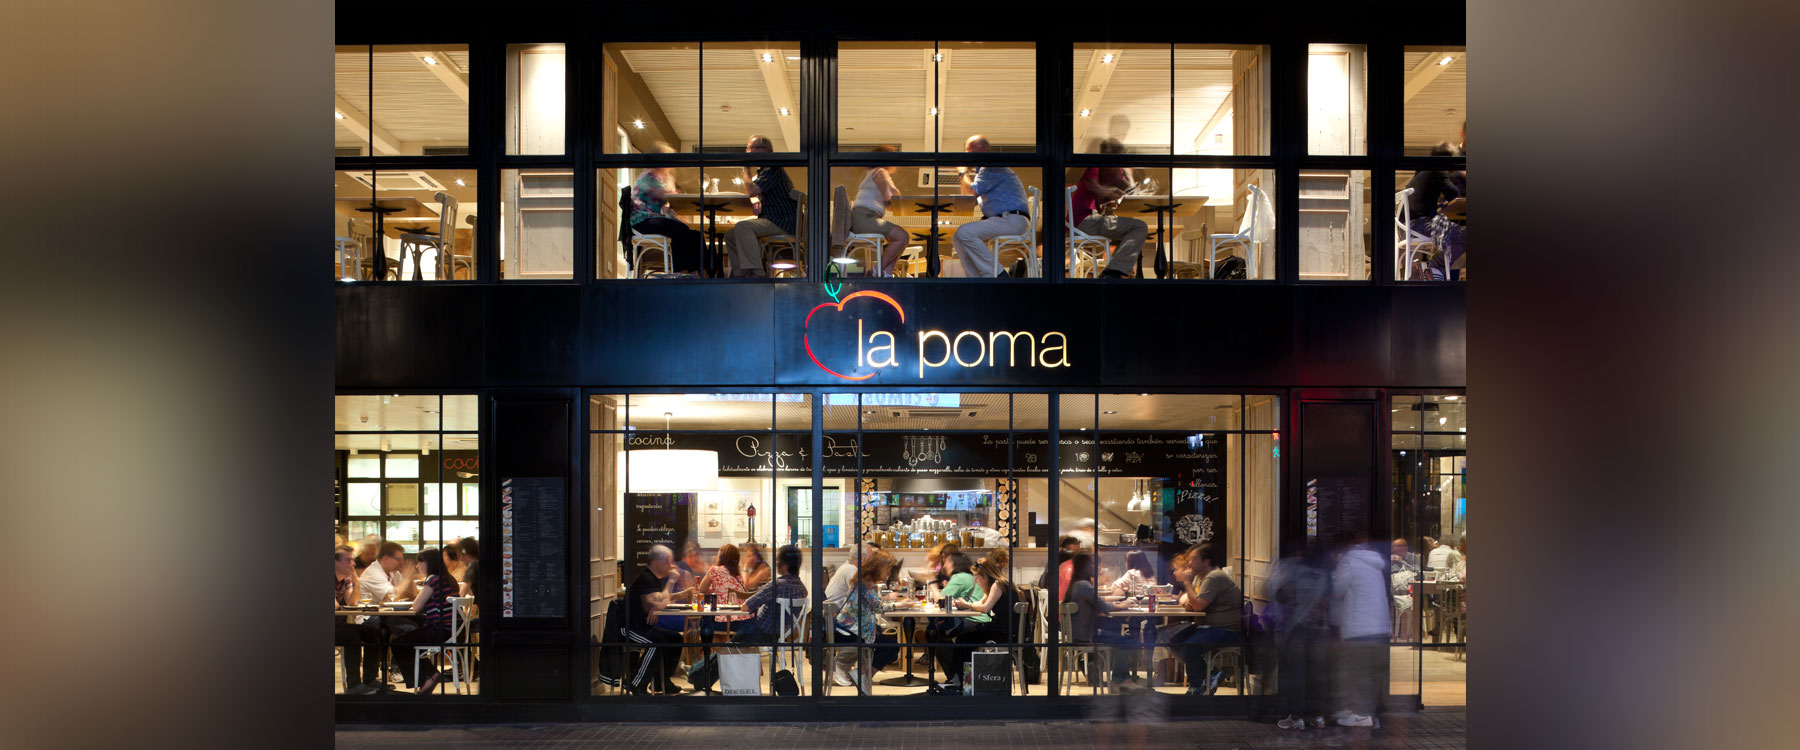 Reforma Restaurante “La Poma”